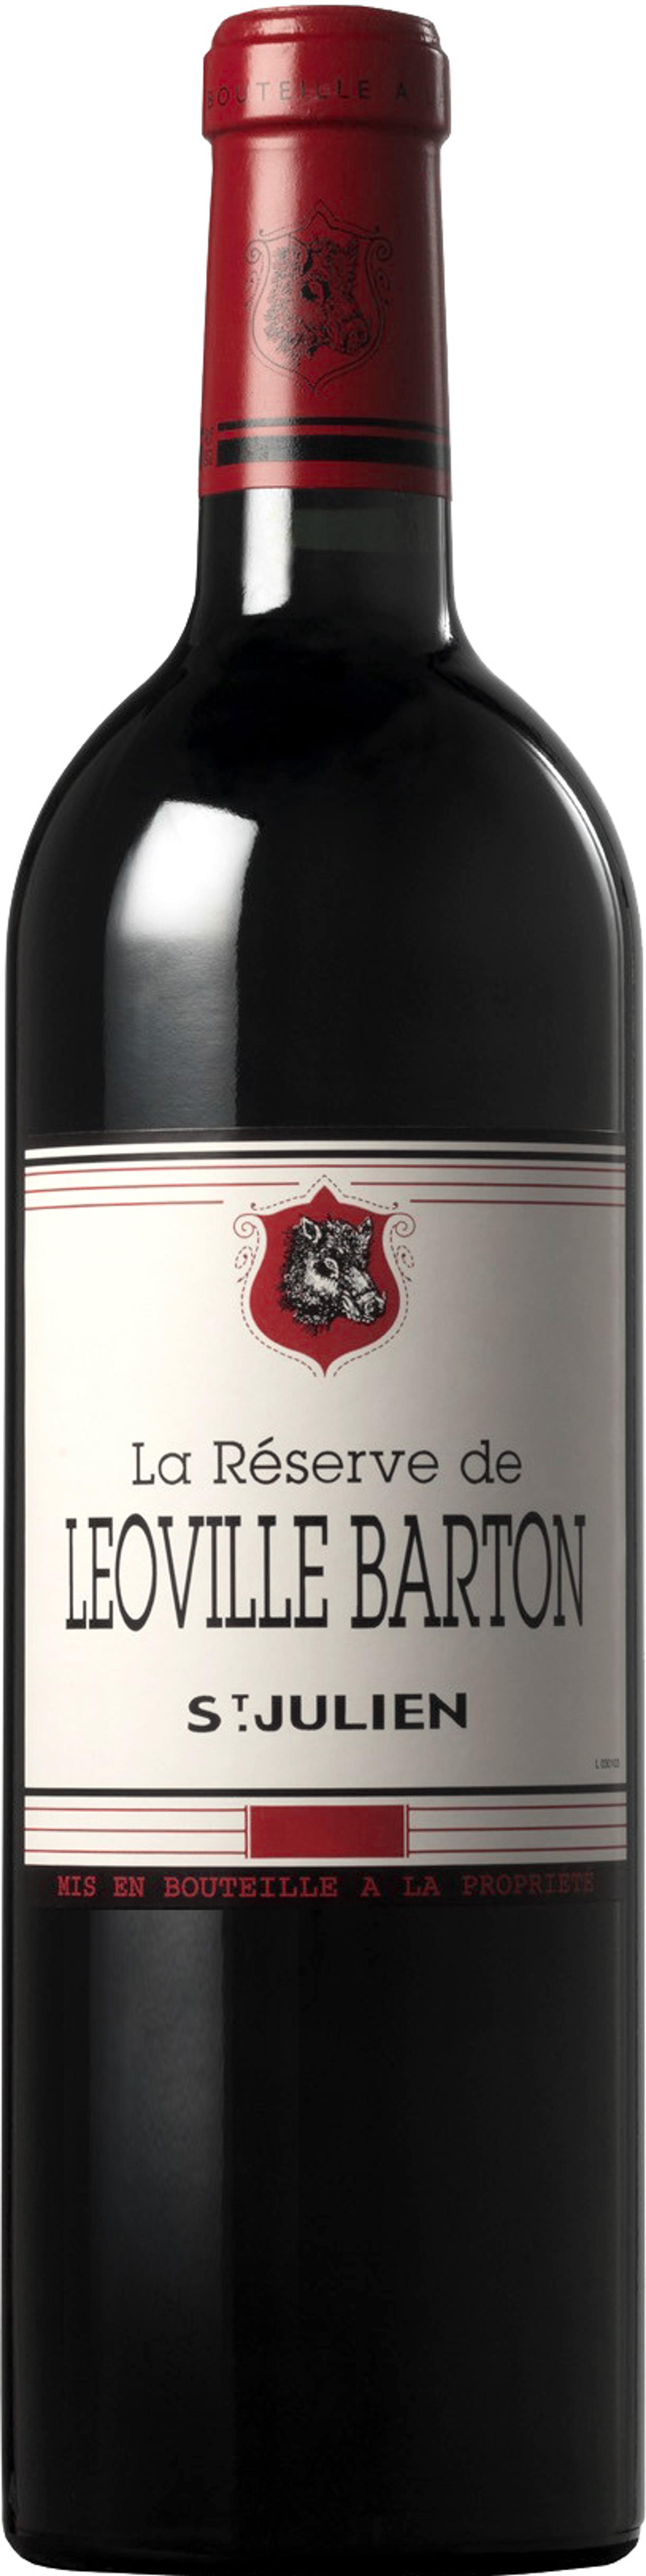 La réserve de Léoville Barton